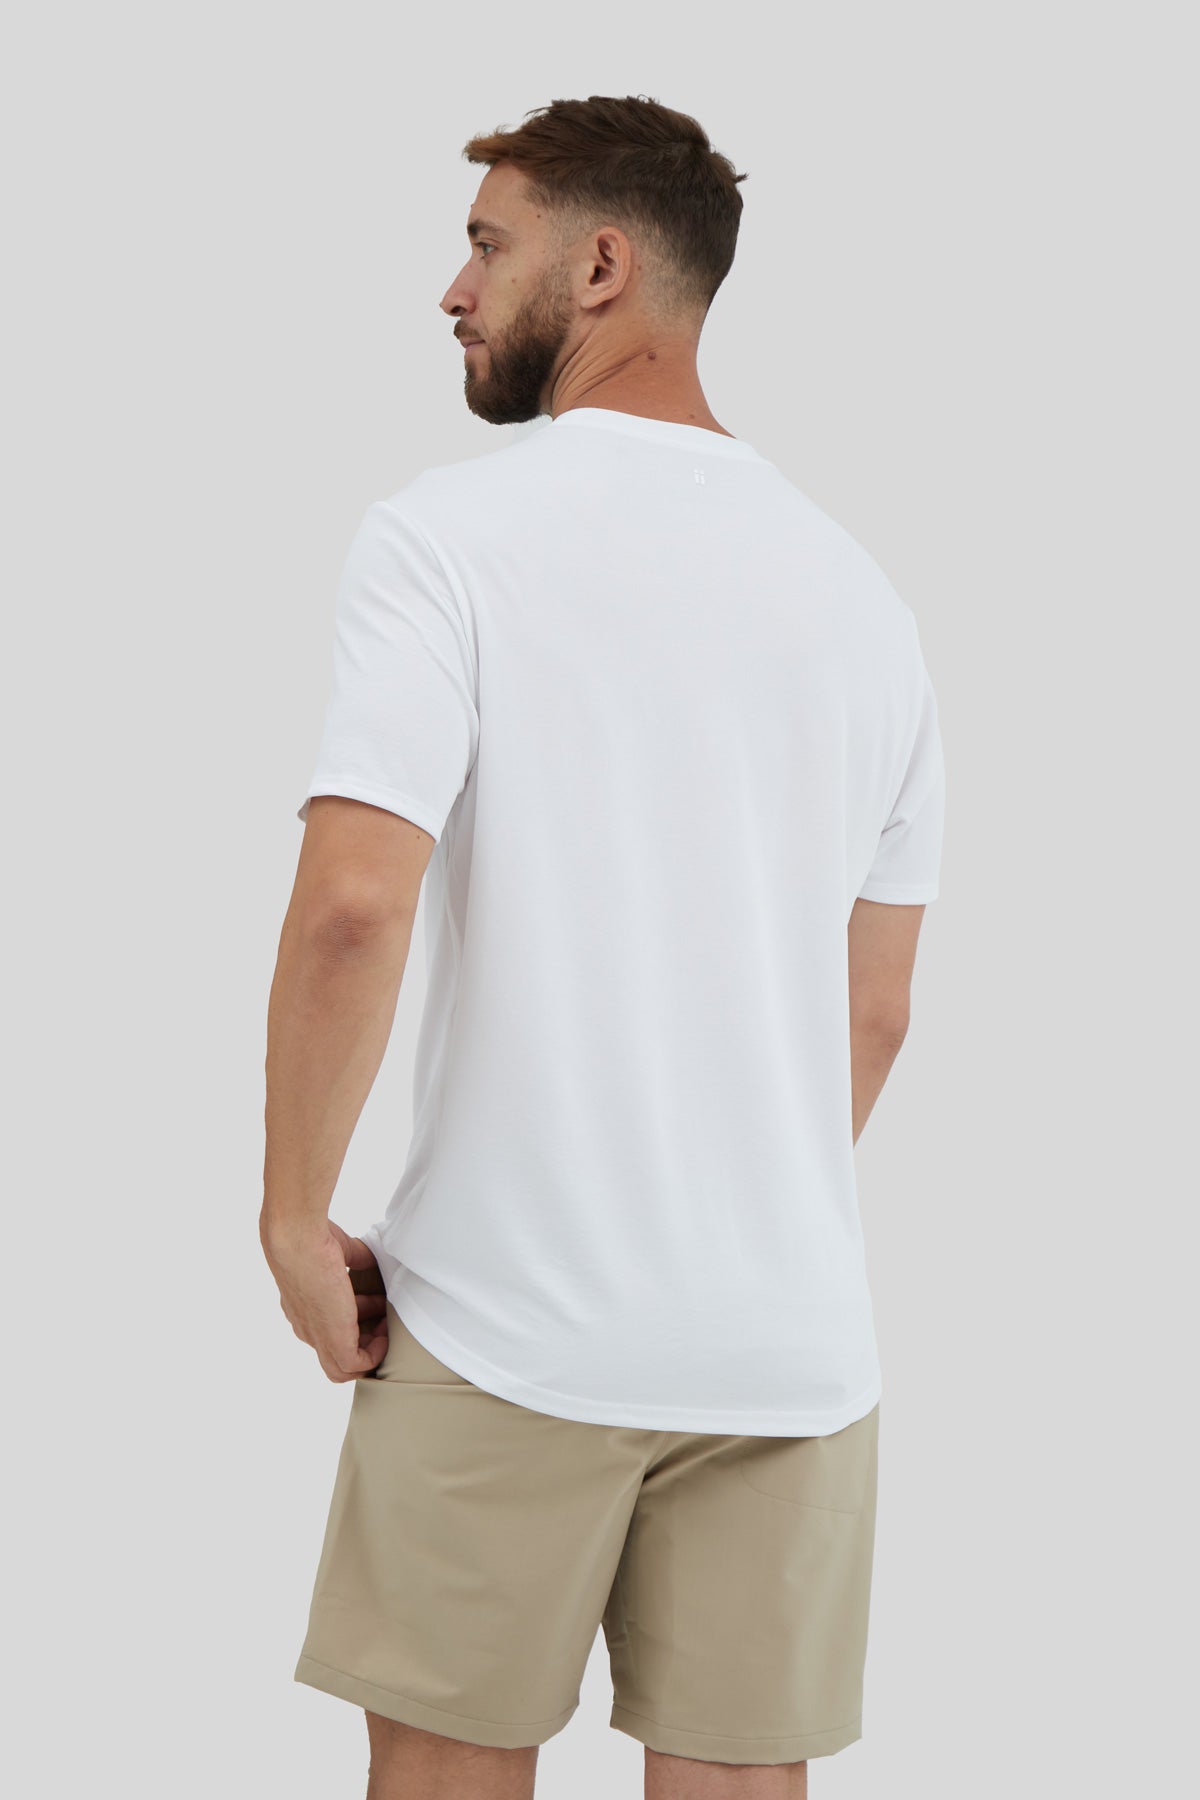 White t-shirt | Enrique Alex